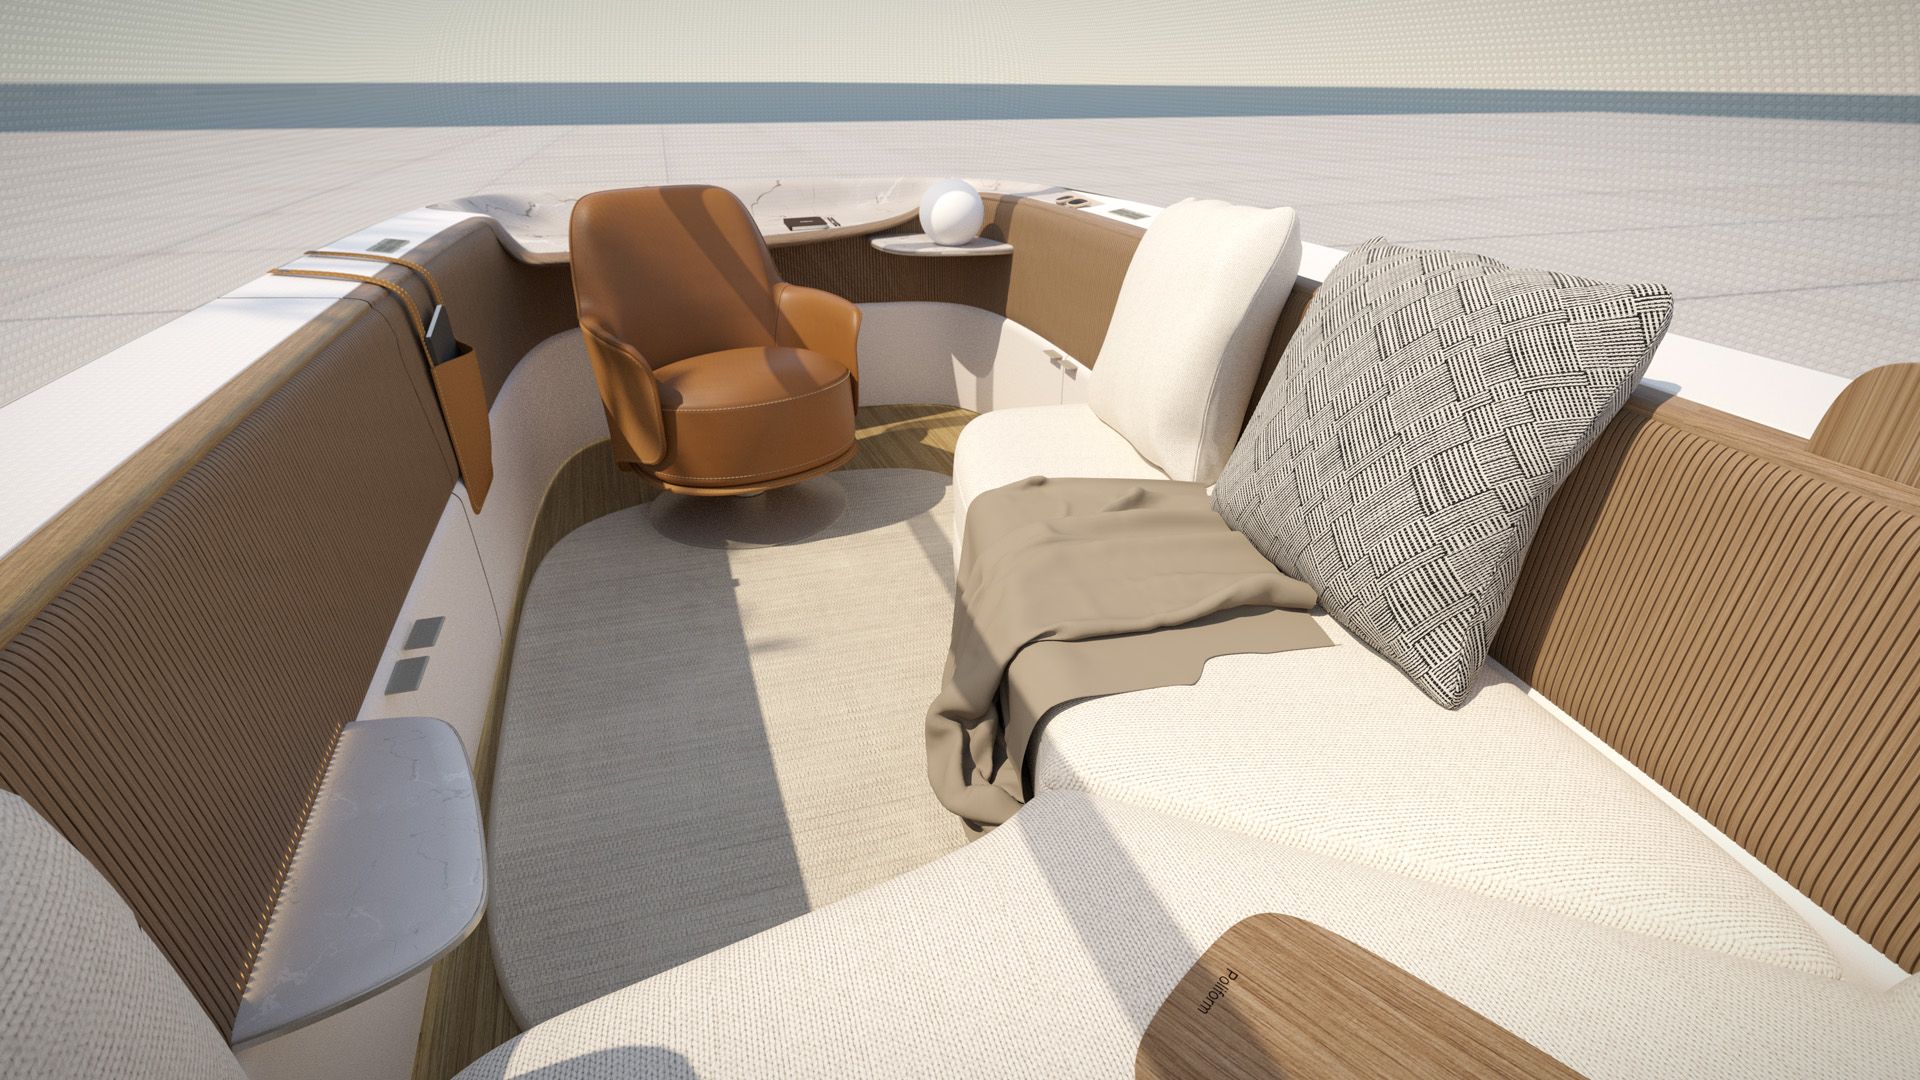 Il progetto degli interni di Poliform per Audi urbansphere concept mostra un abitaco-lo accogliente con molti cuscini e una poltrona.